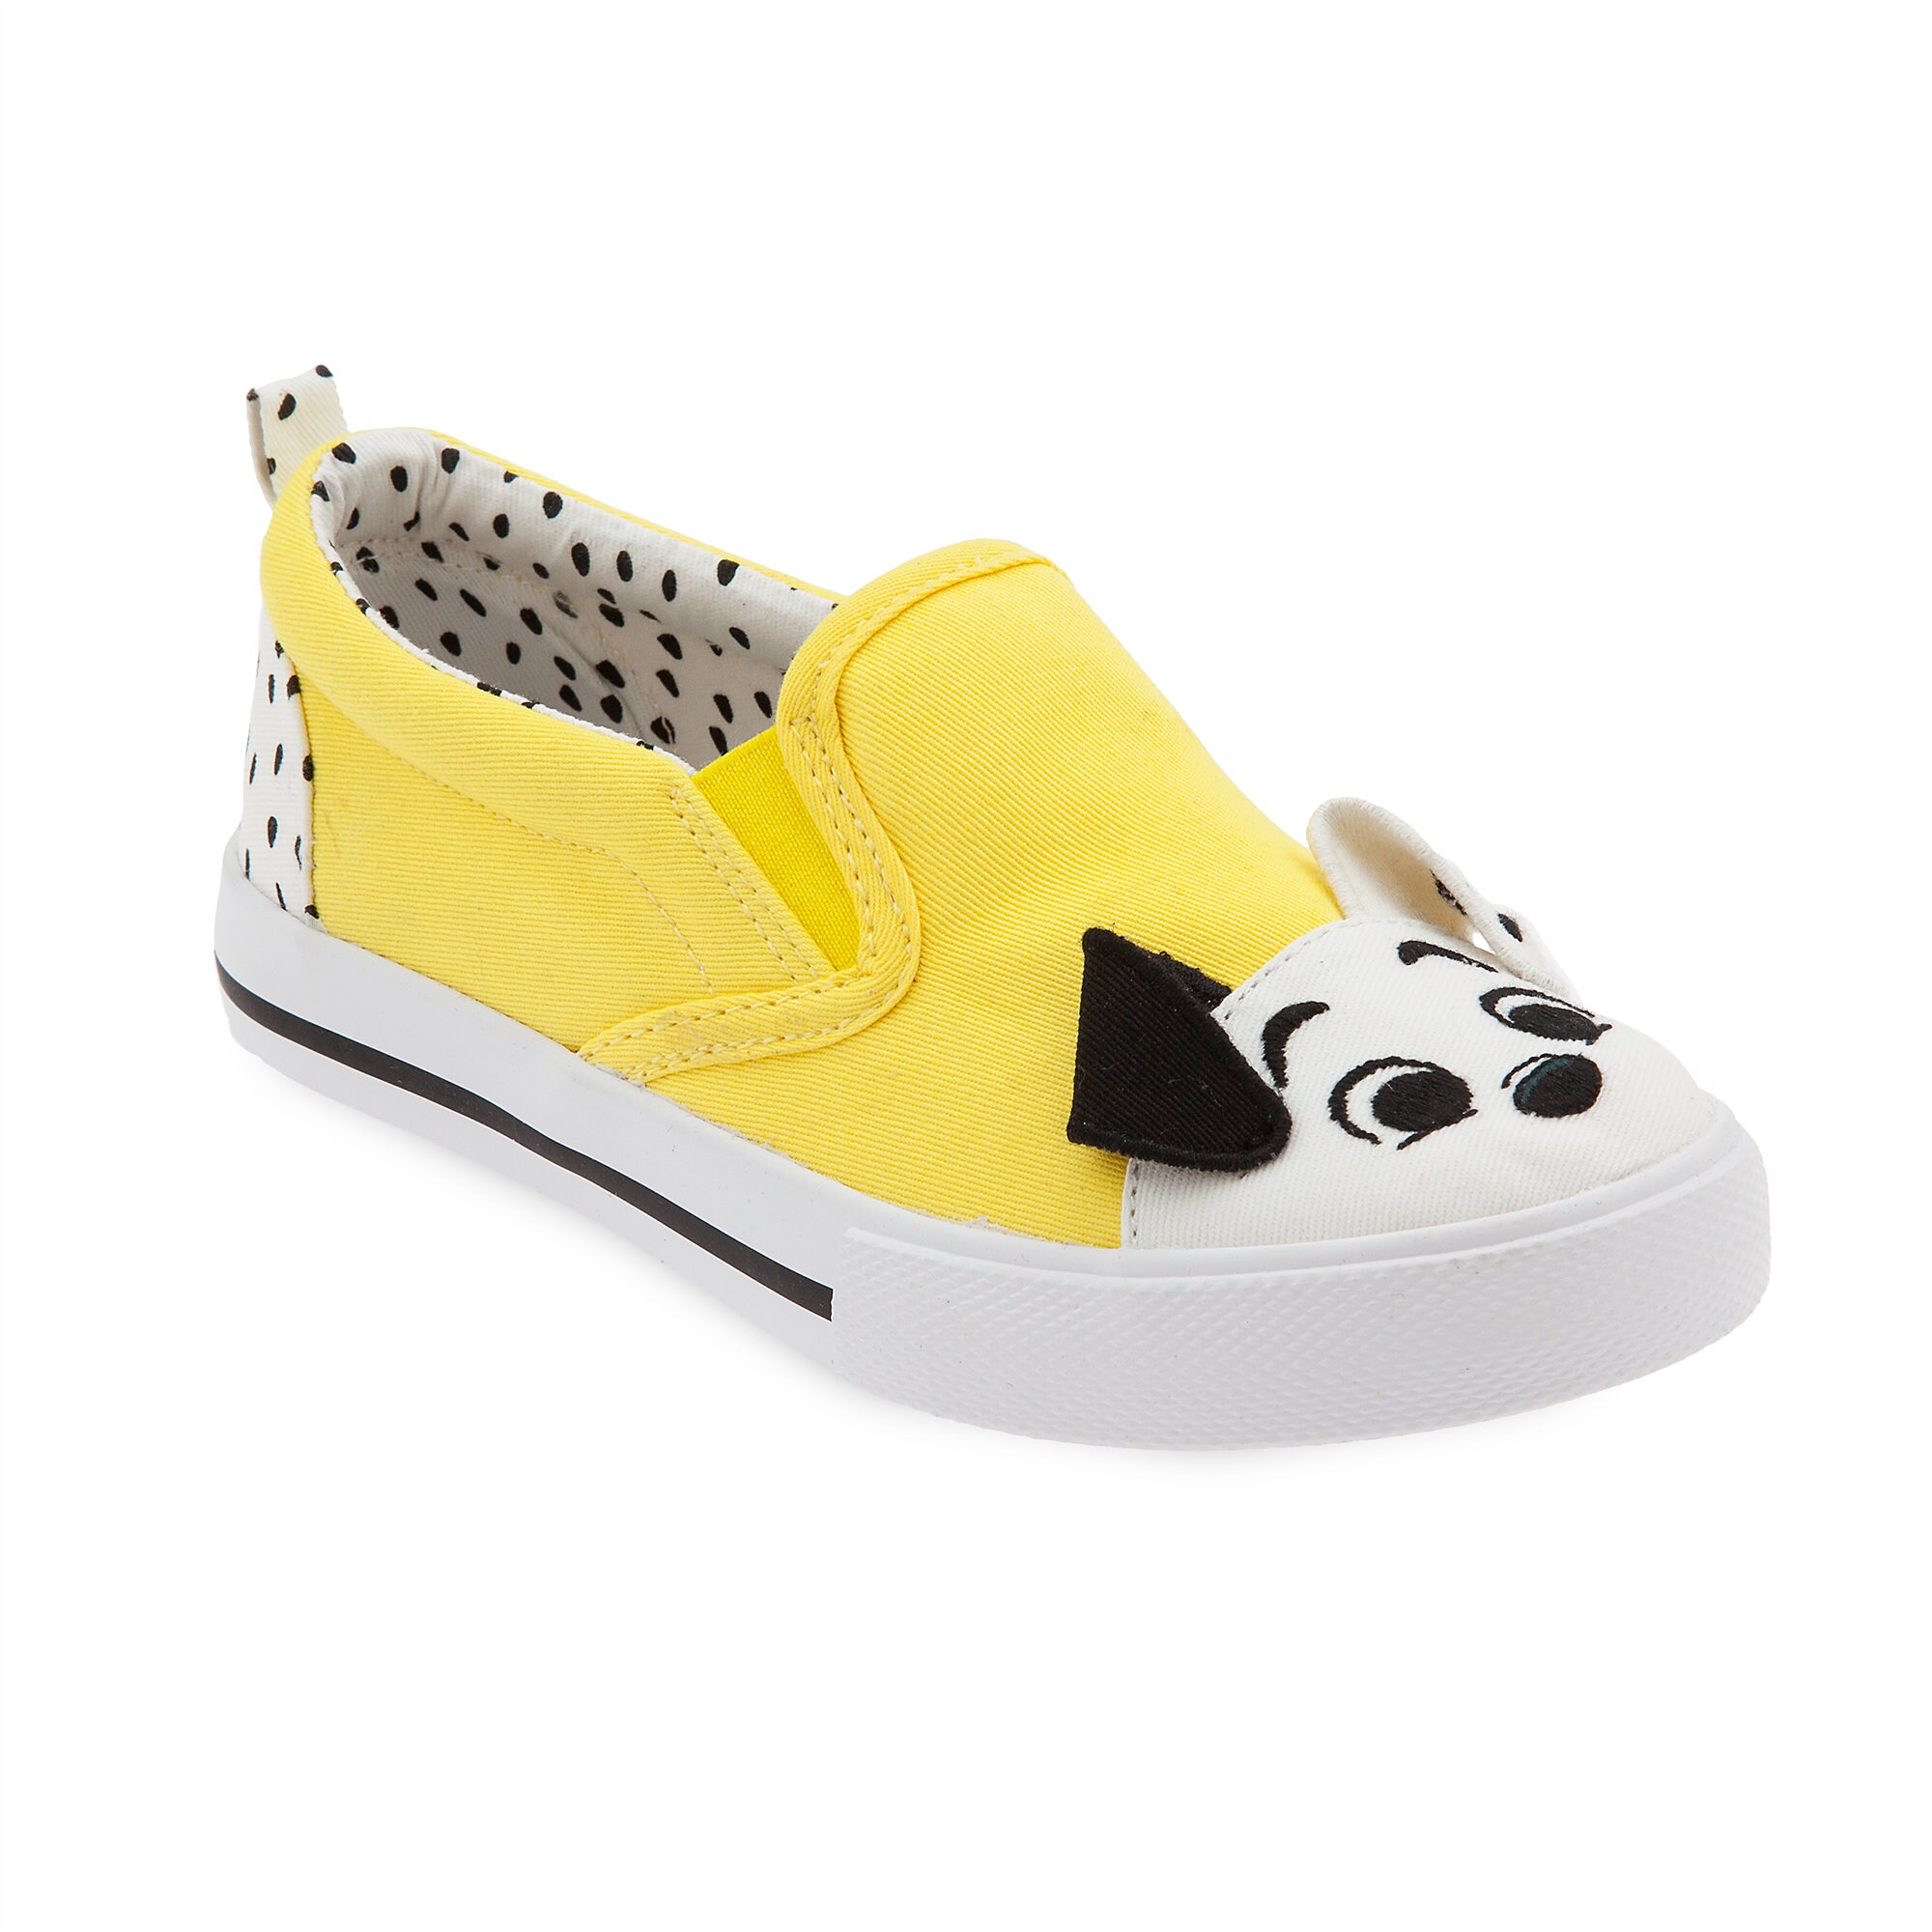 101 Dalmatians Slip-On Sneakers for Kids - Disney Furrytale friends has ...